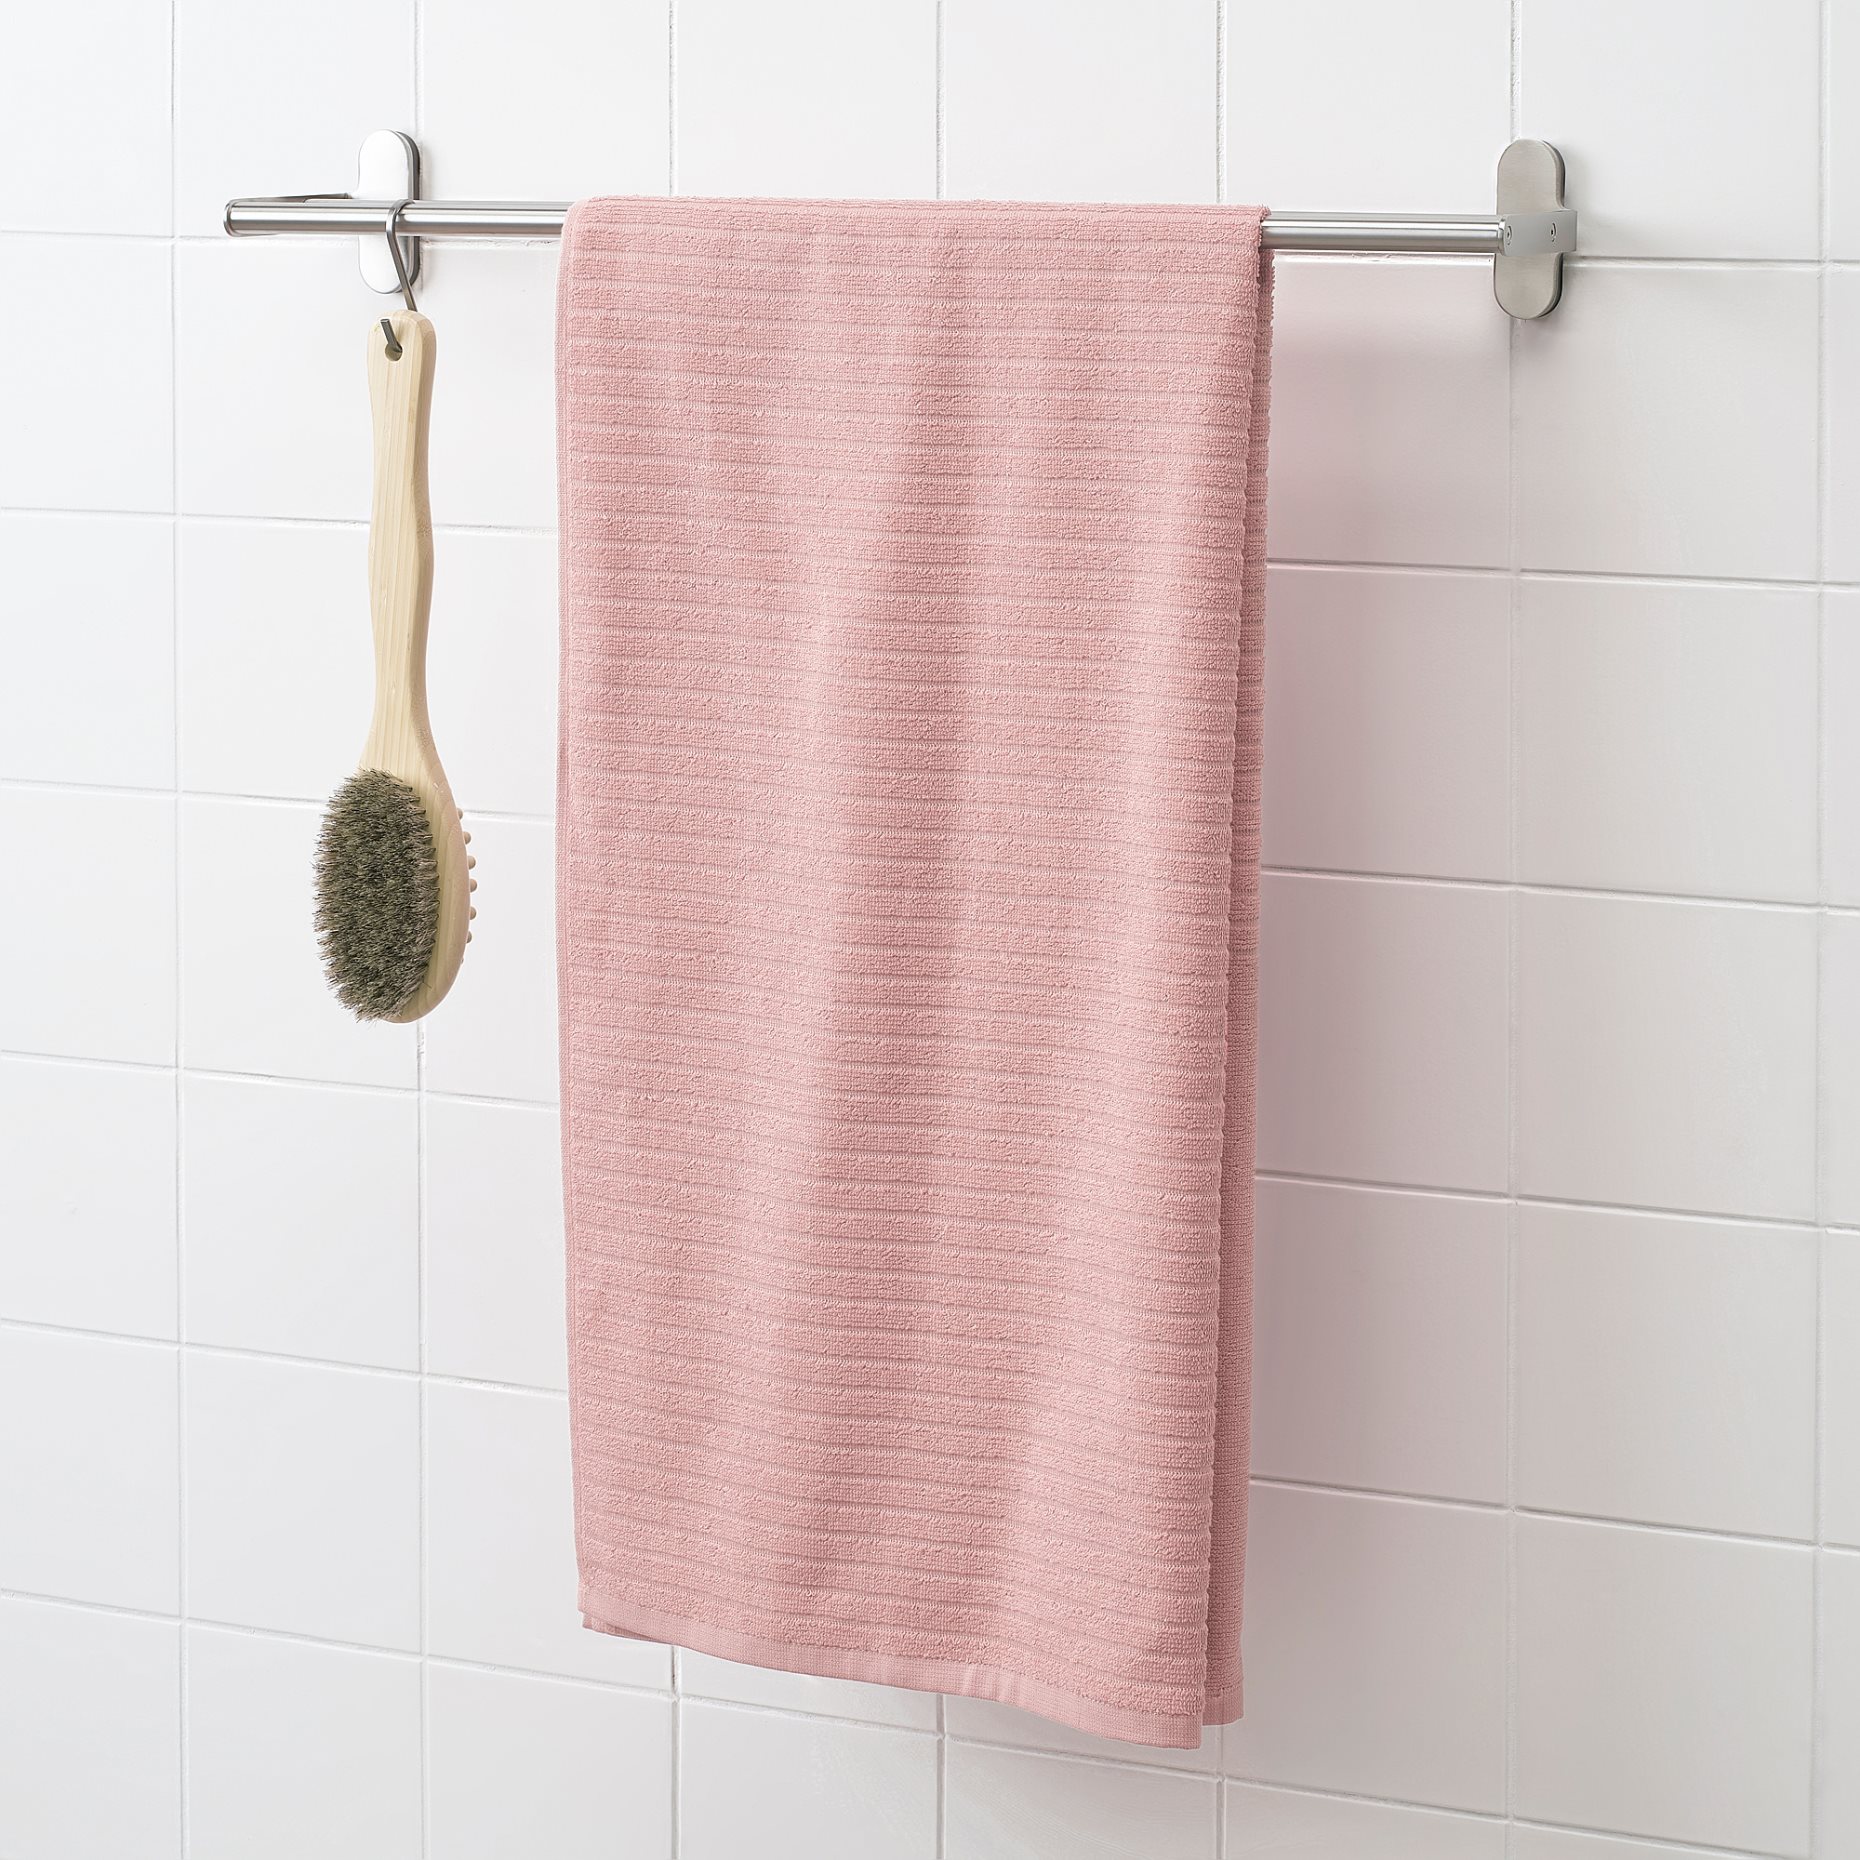 VÅGSJÖN, bath towel, 70x140 cm, 604.880.07